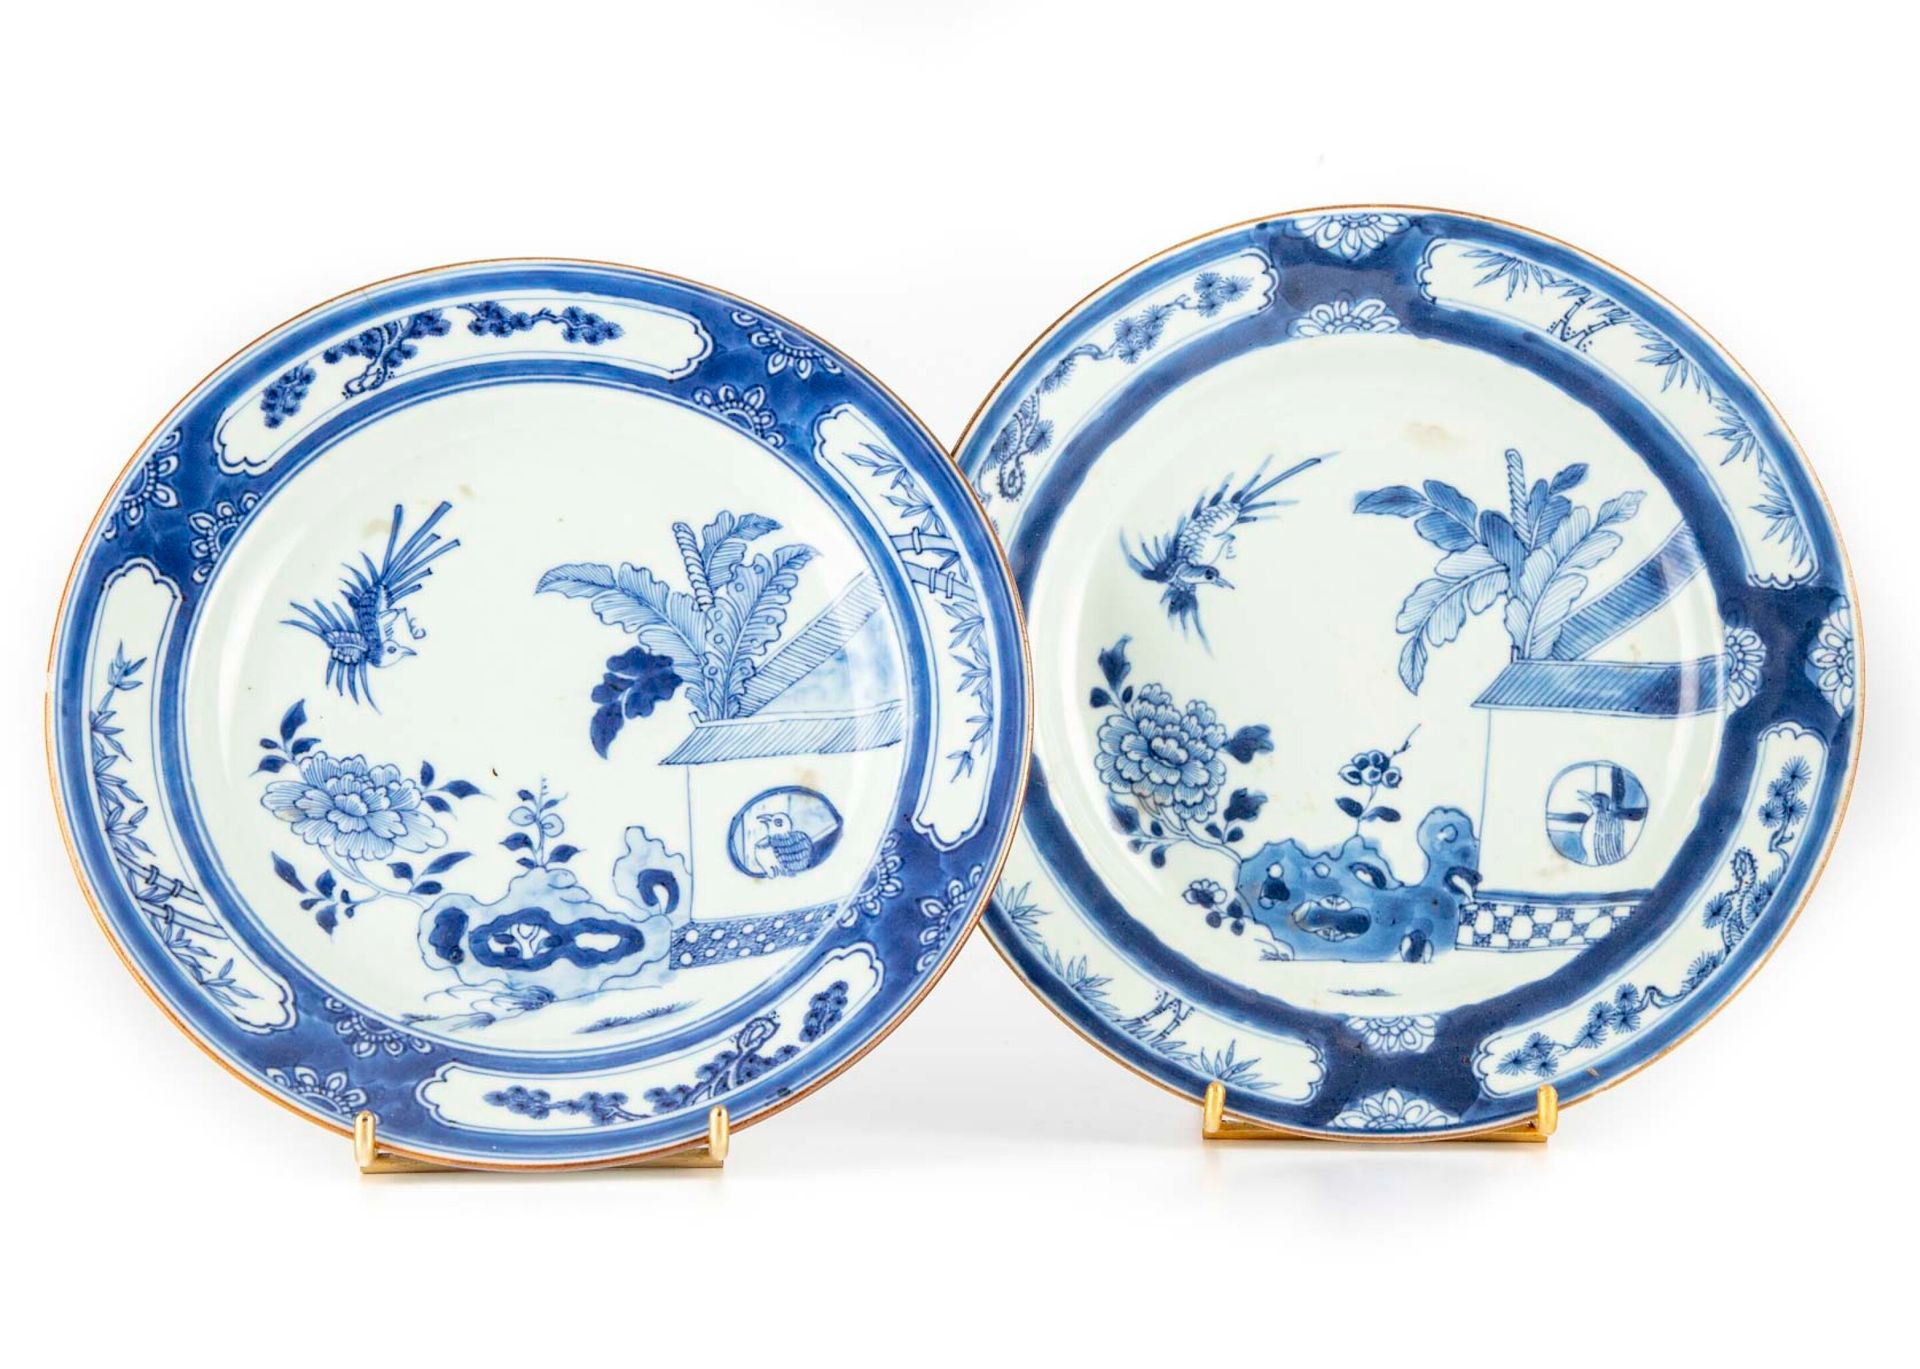 CHINE CHINA

Zwei Porzellanteller mit blauem monochromem Dekor eines Kuckucks im&hellip;